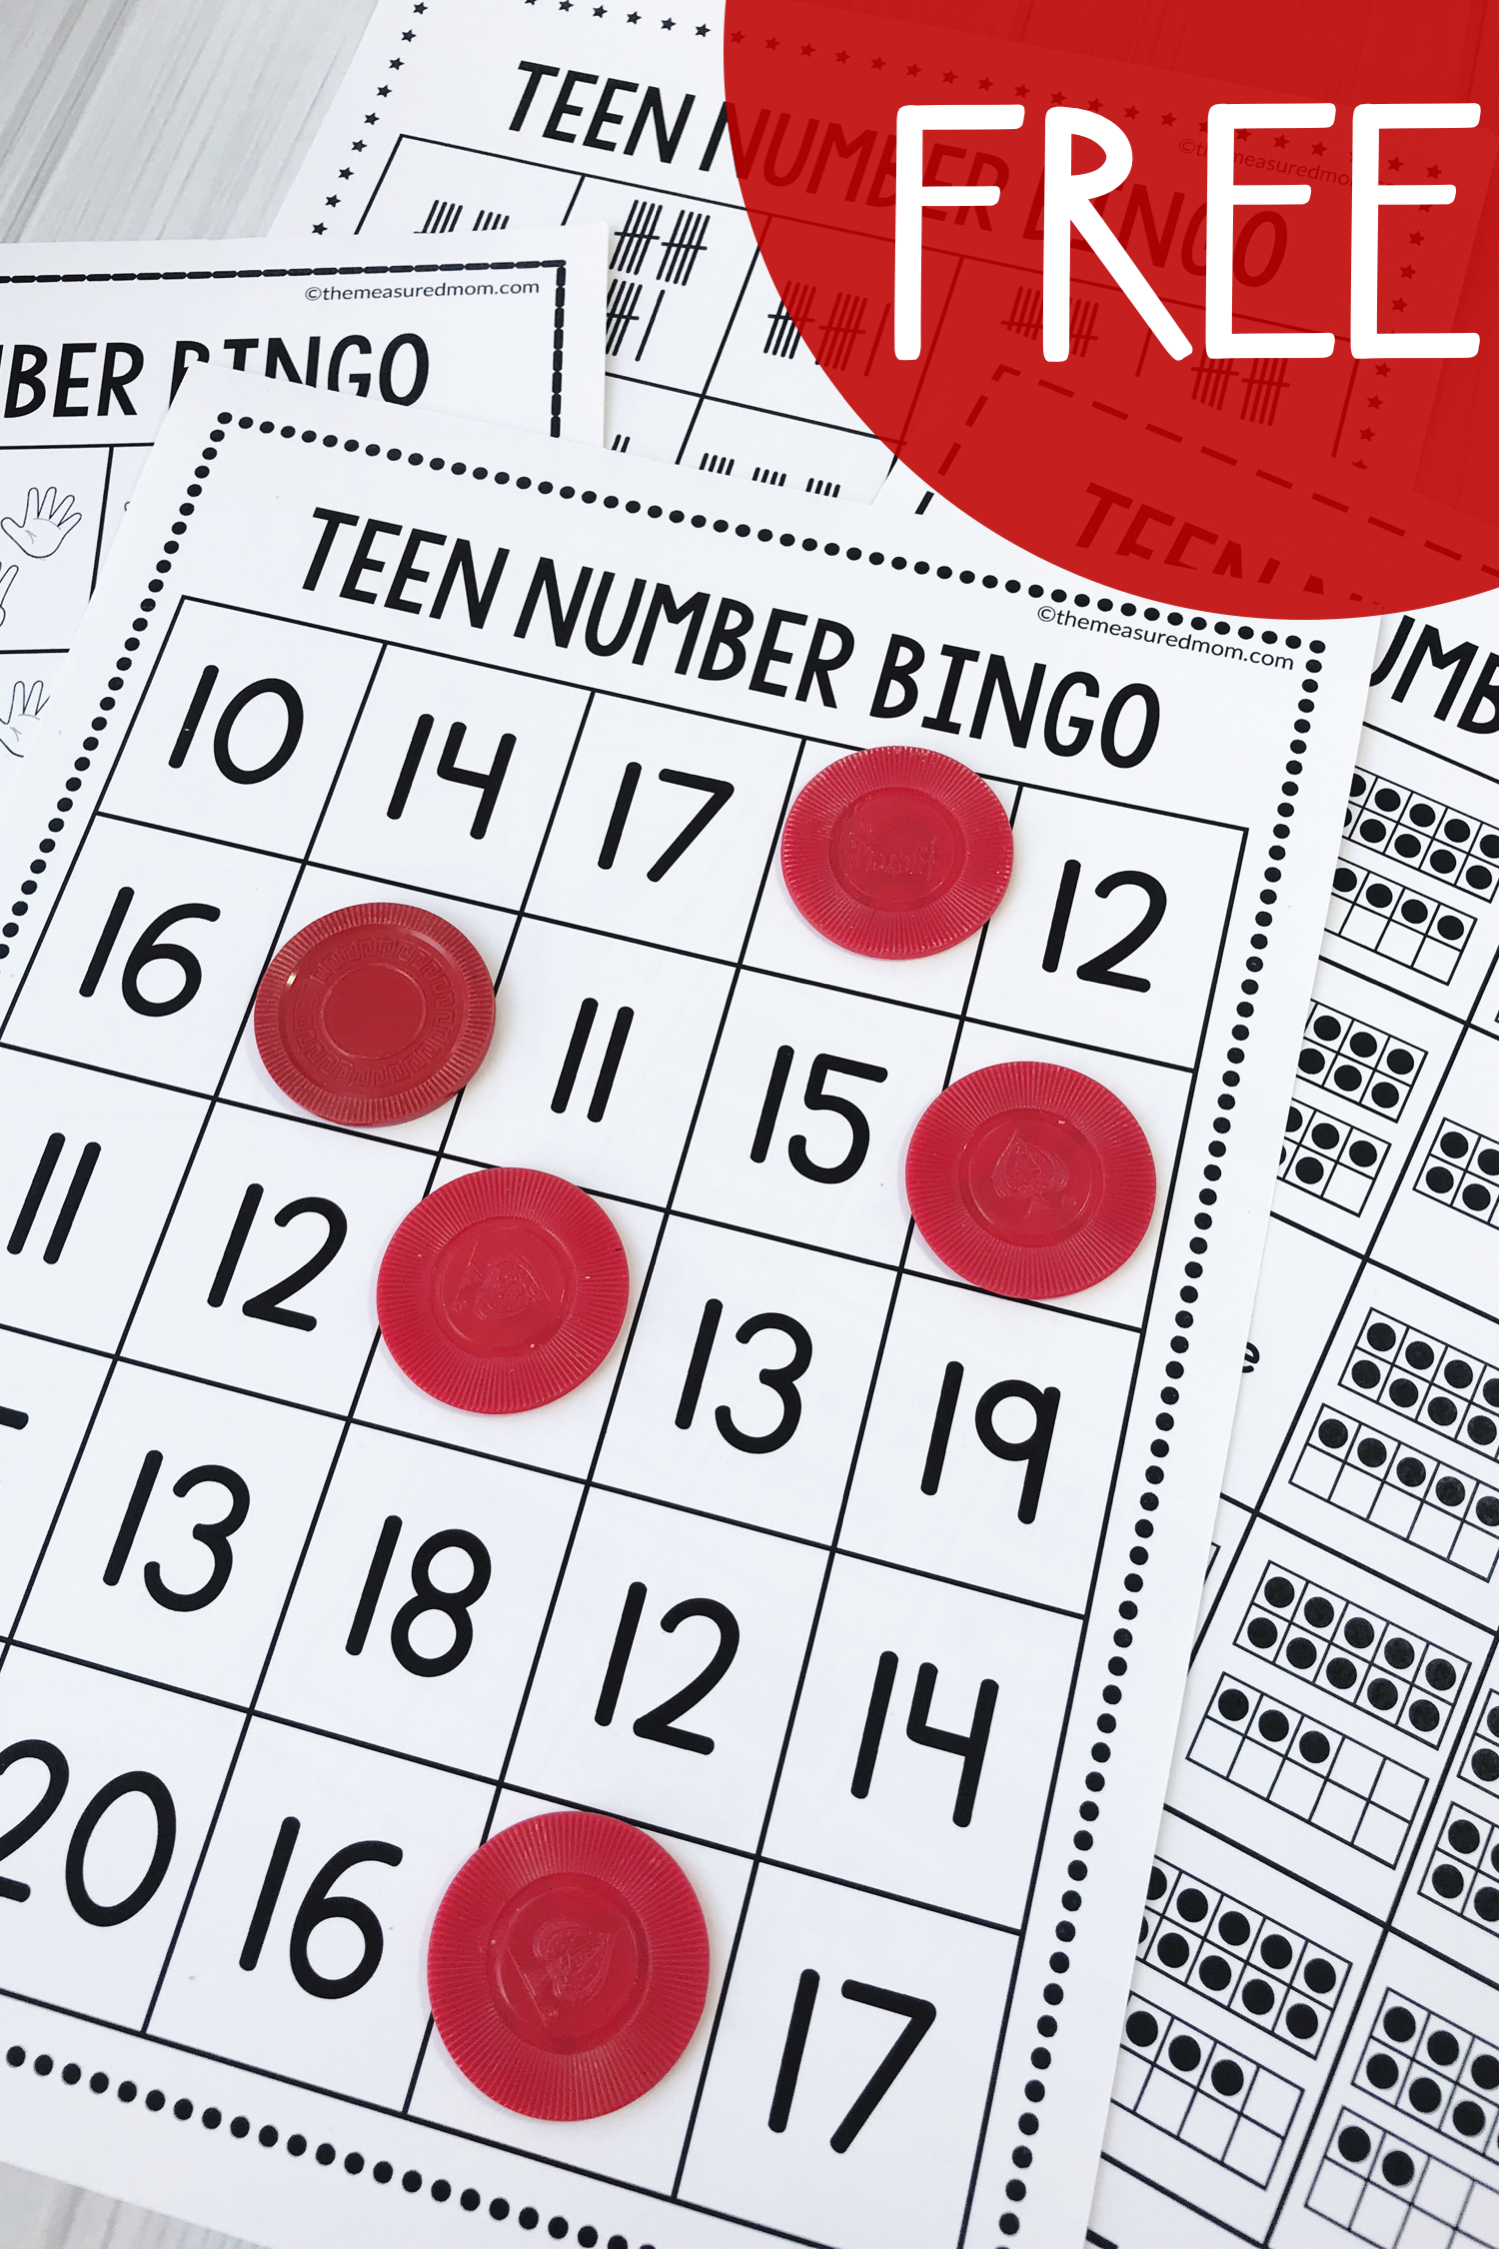 Free Teen Number Activities - Bingo! - The Measured Mom